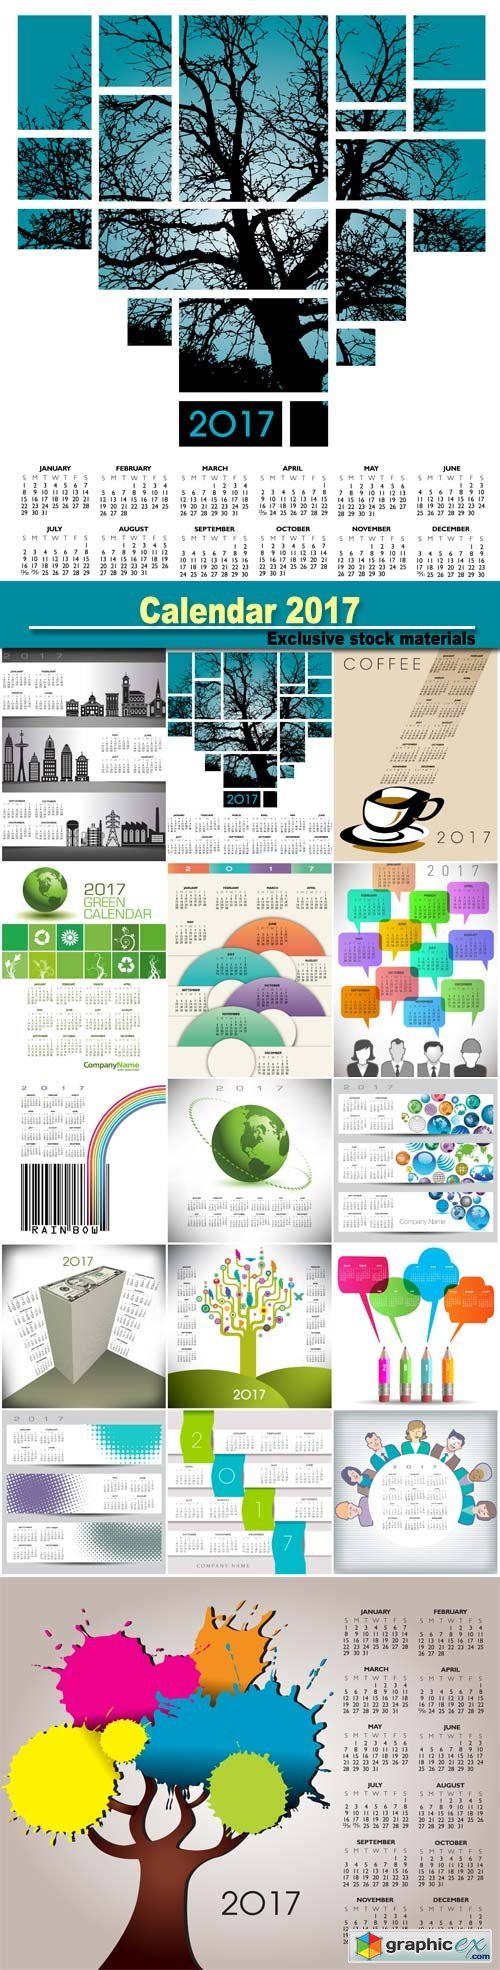 Calendar 2017, vector illustration